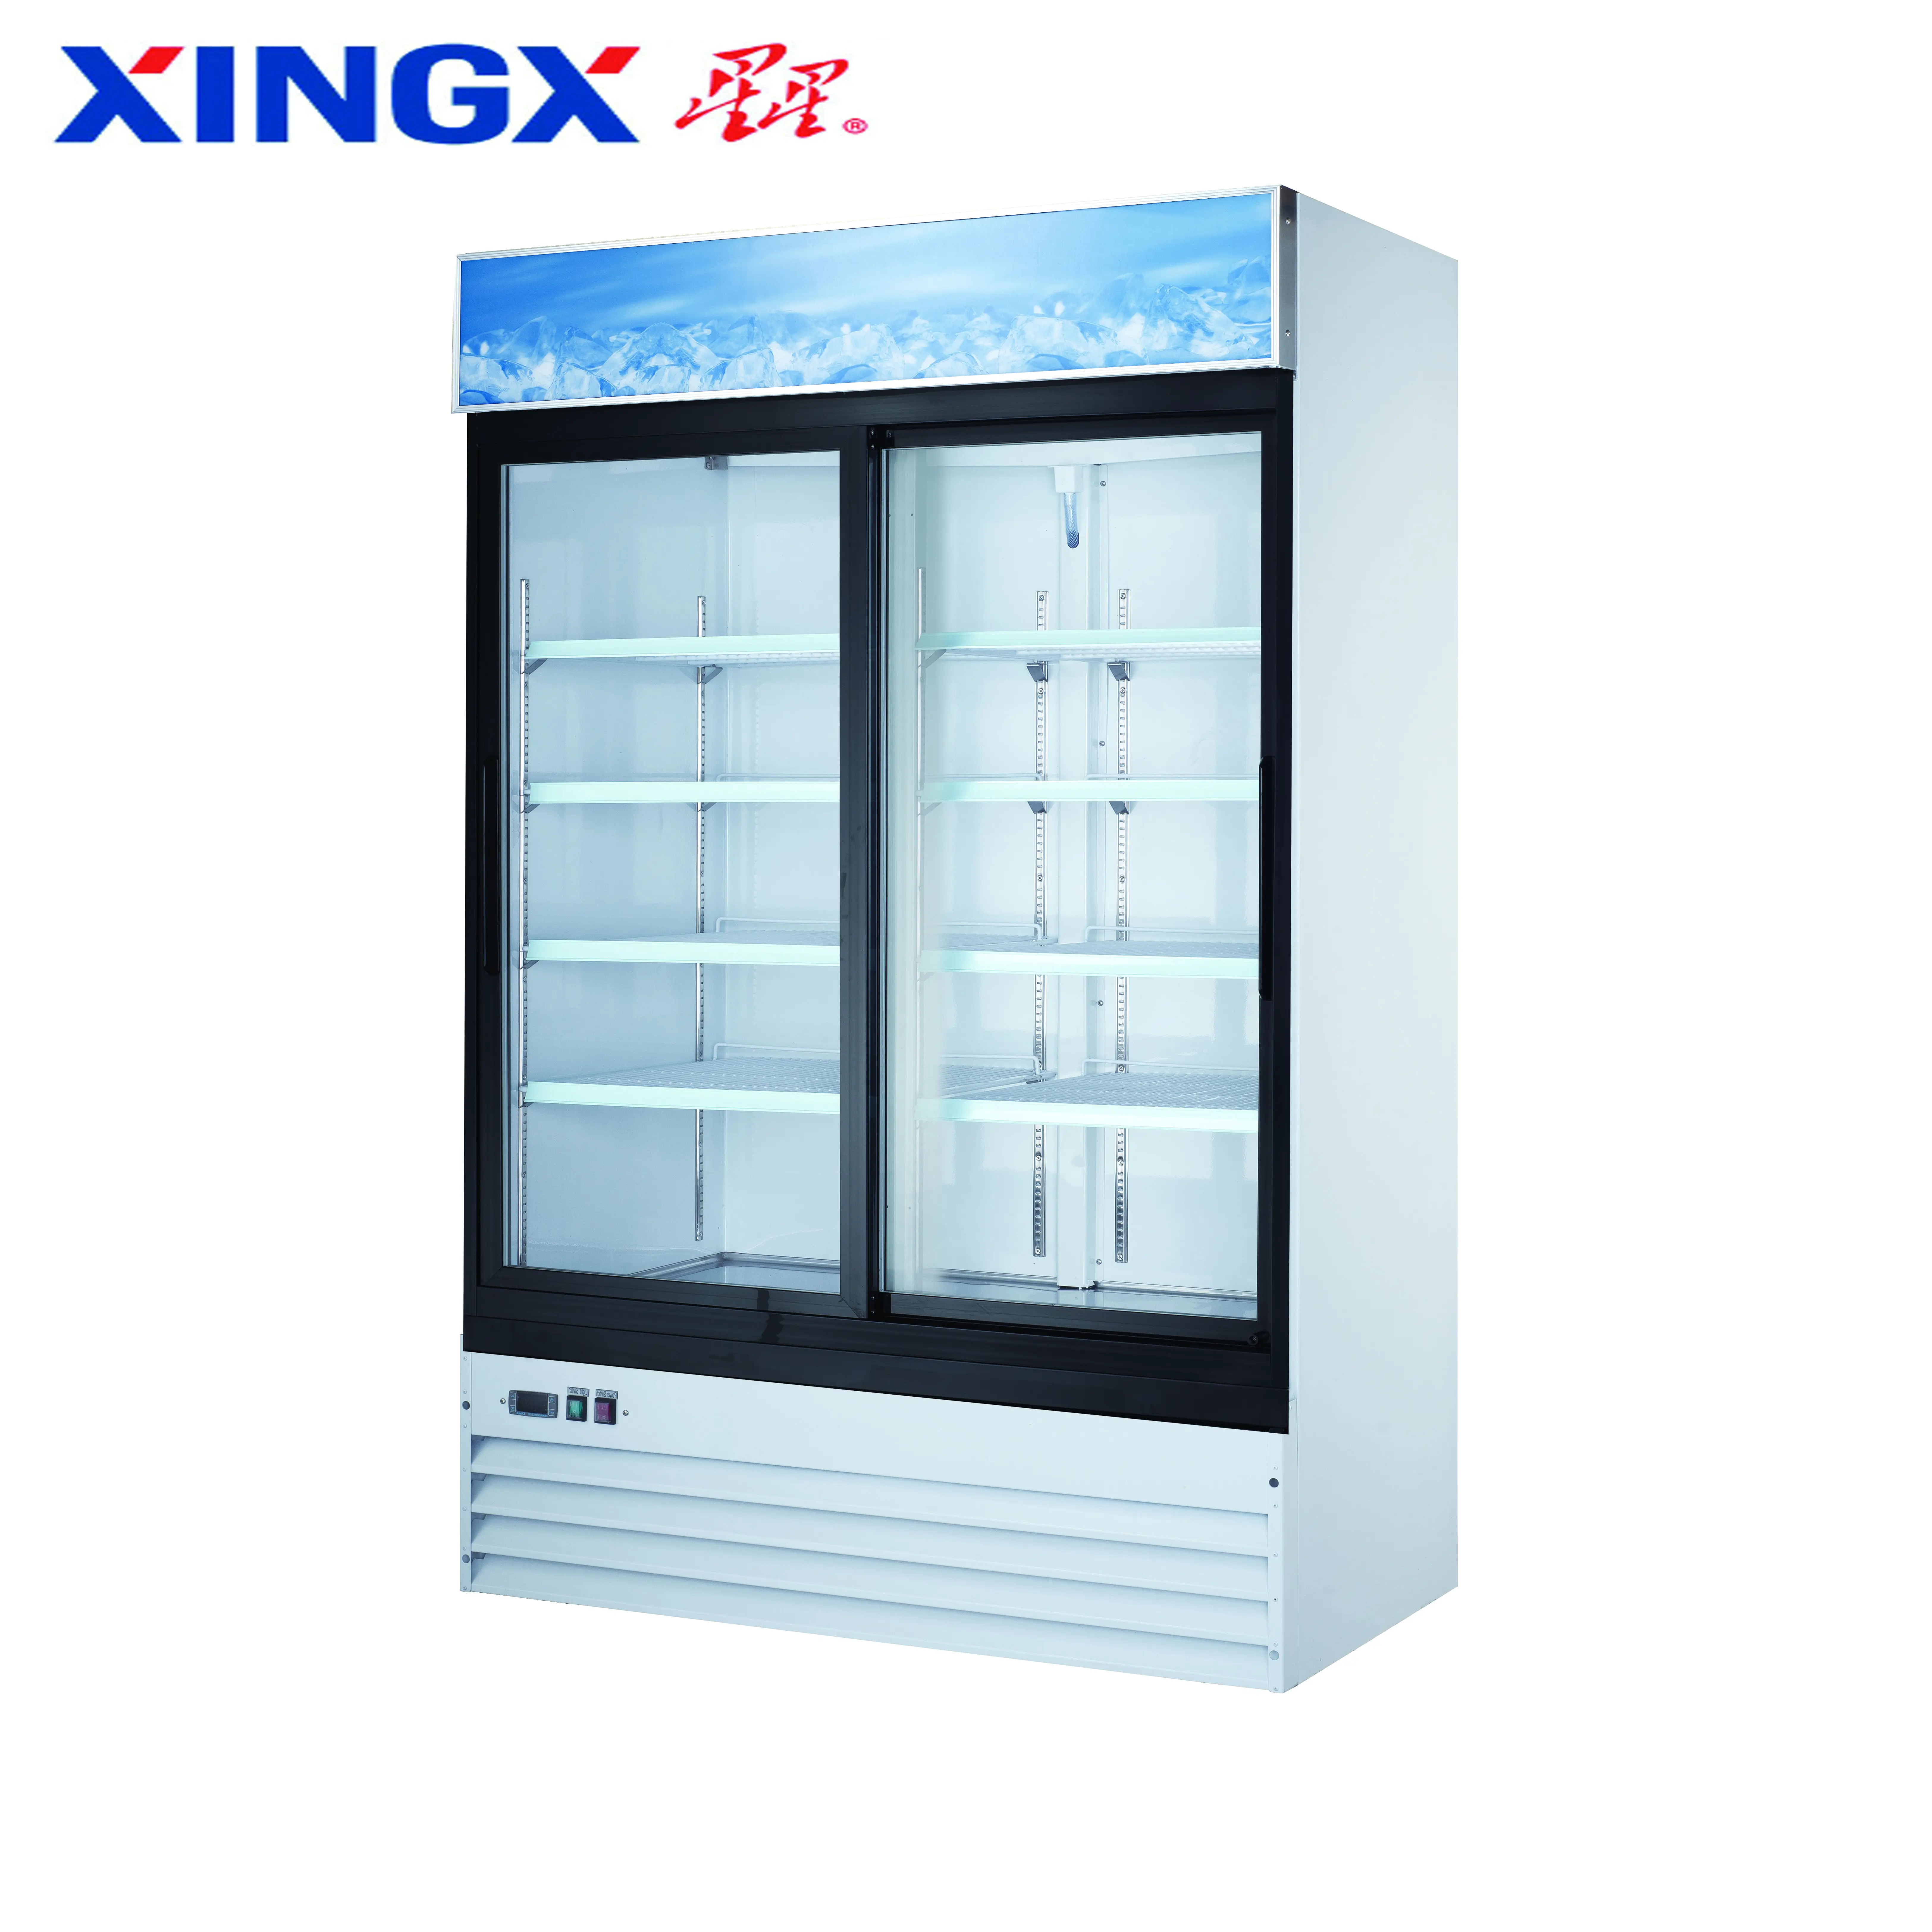 2 개의 유리제 문 상업적인 냉장고, 병 전시 showcase_G1.2YBM2F-HC-Refrigeration 장비